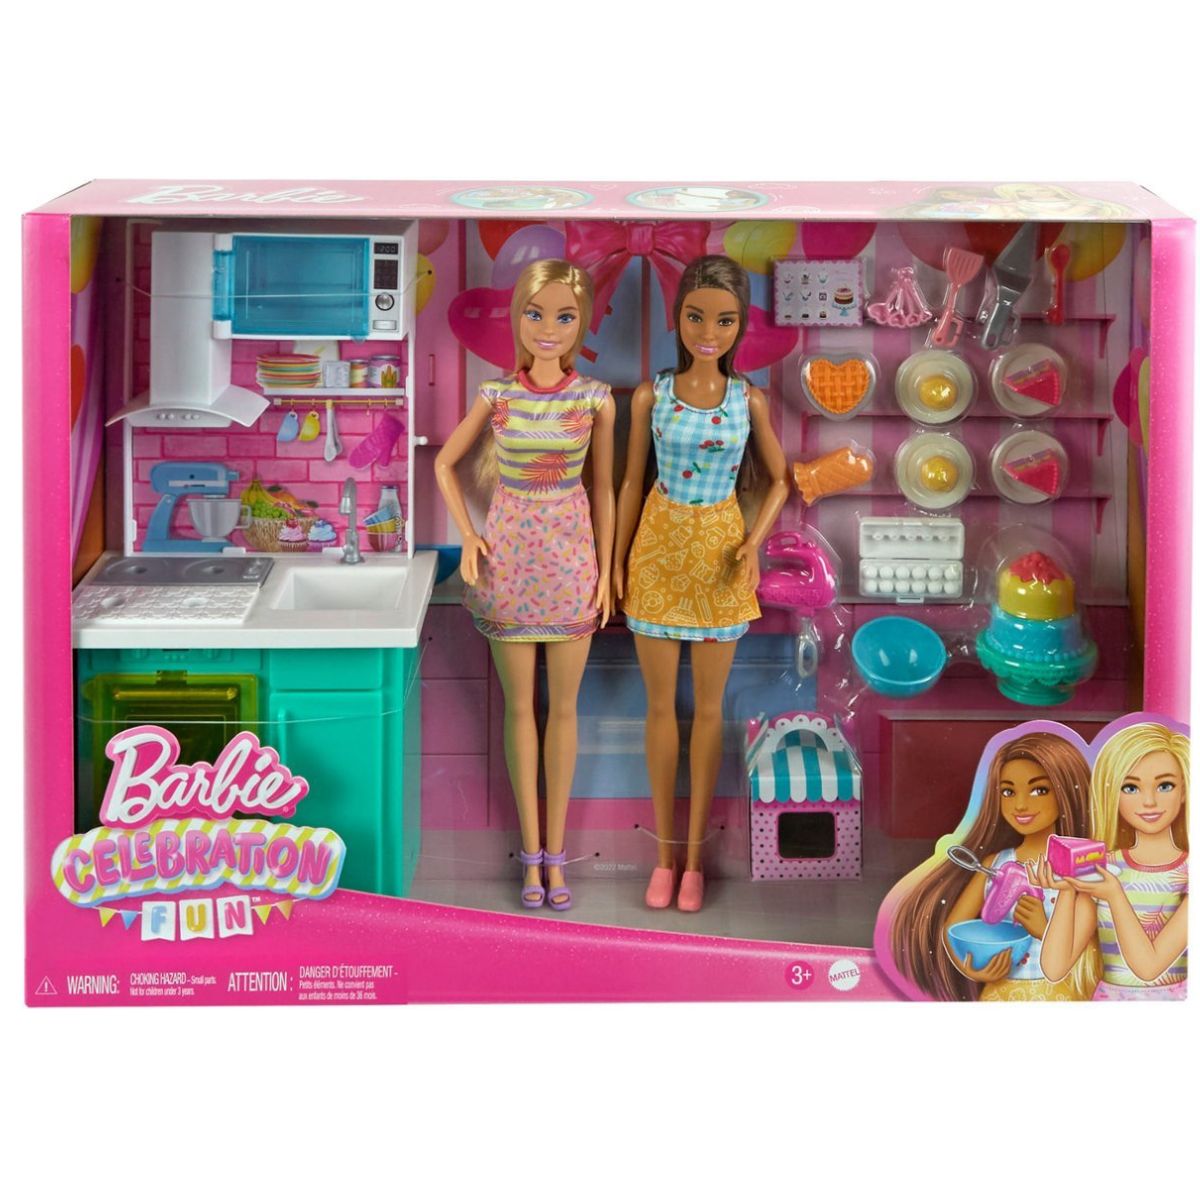 Festa de aniversario barbie em promoção